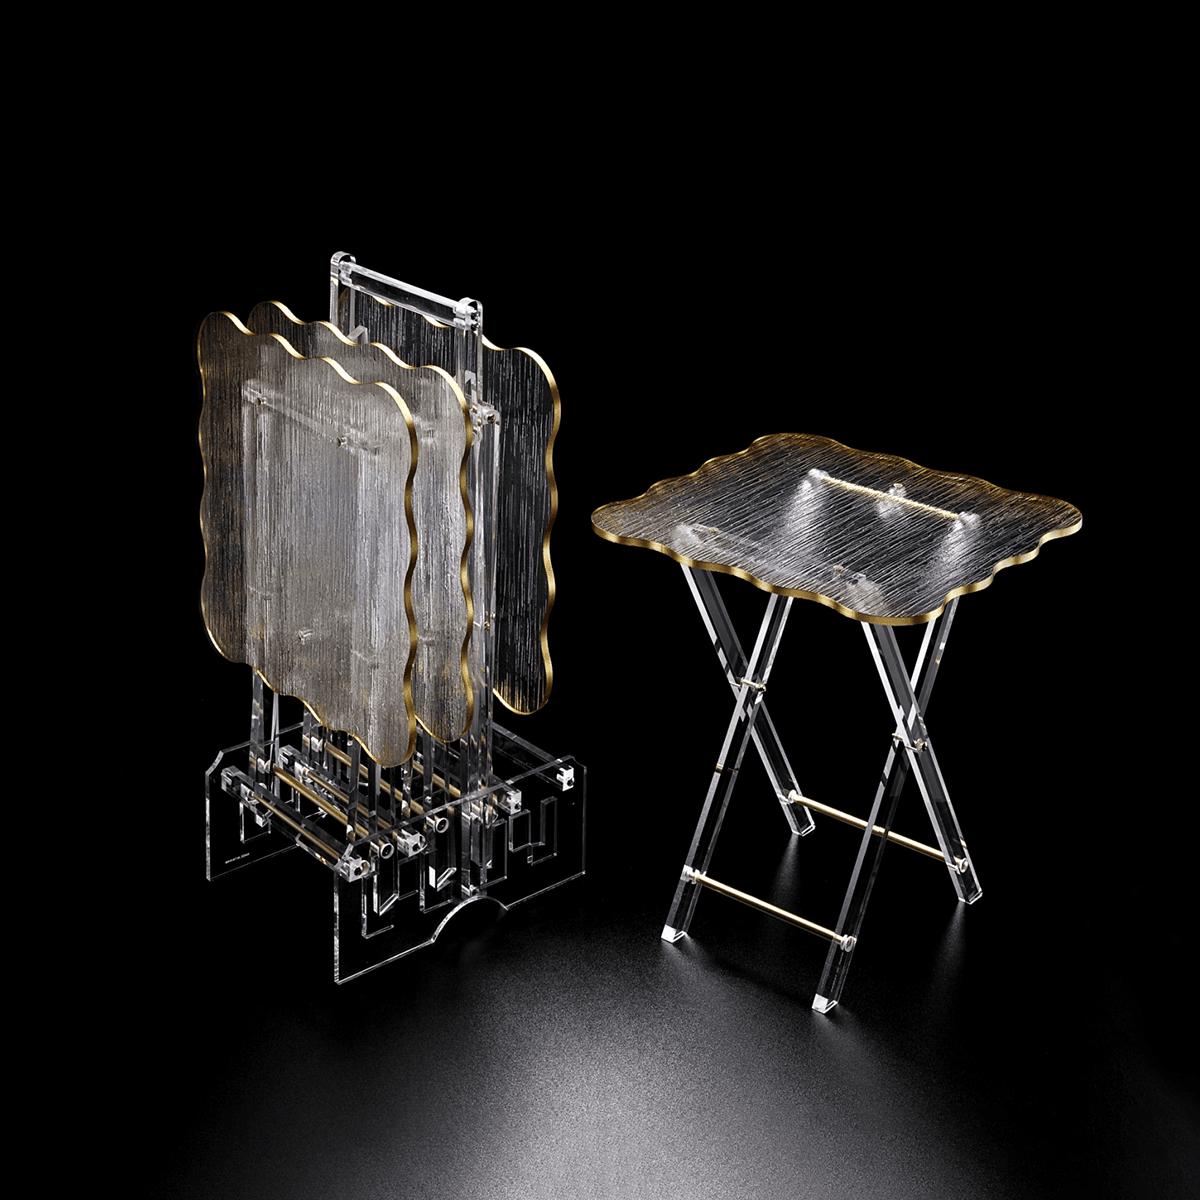 طقم طاولات قهوة متموجة من الأكريليك الشفاف مع اطار ذهبي 40 ×40 ×45 سم من ڨاج مضادة للكسر صناعة تايوان Vague Acrylic 4 Tables with Stand Set - Golder Border Gold Transparent Acrylic